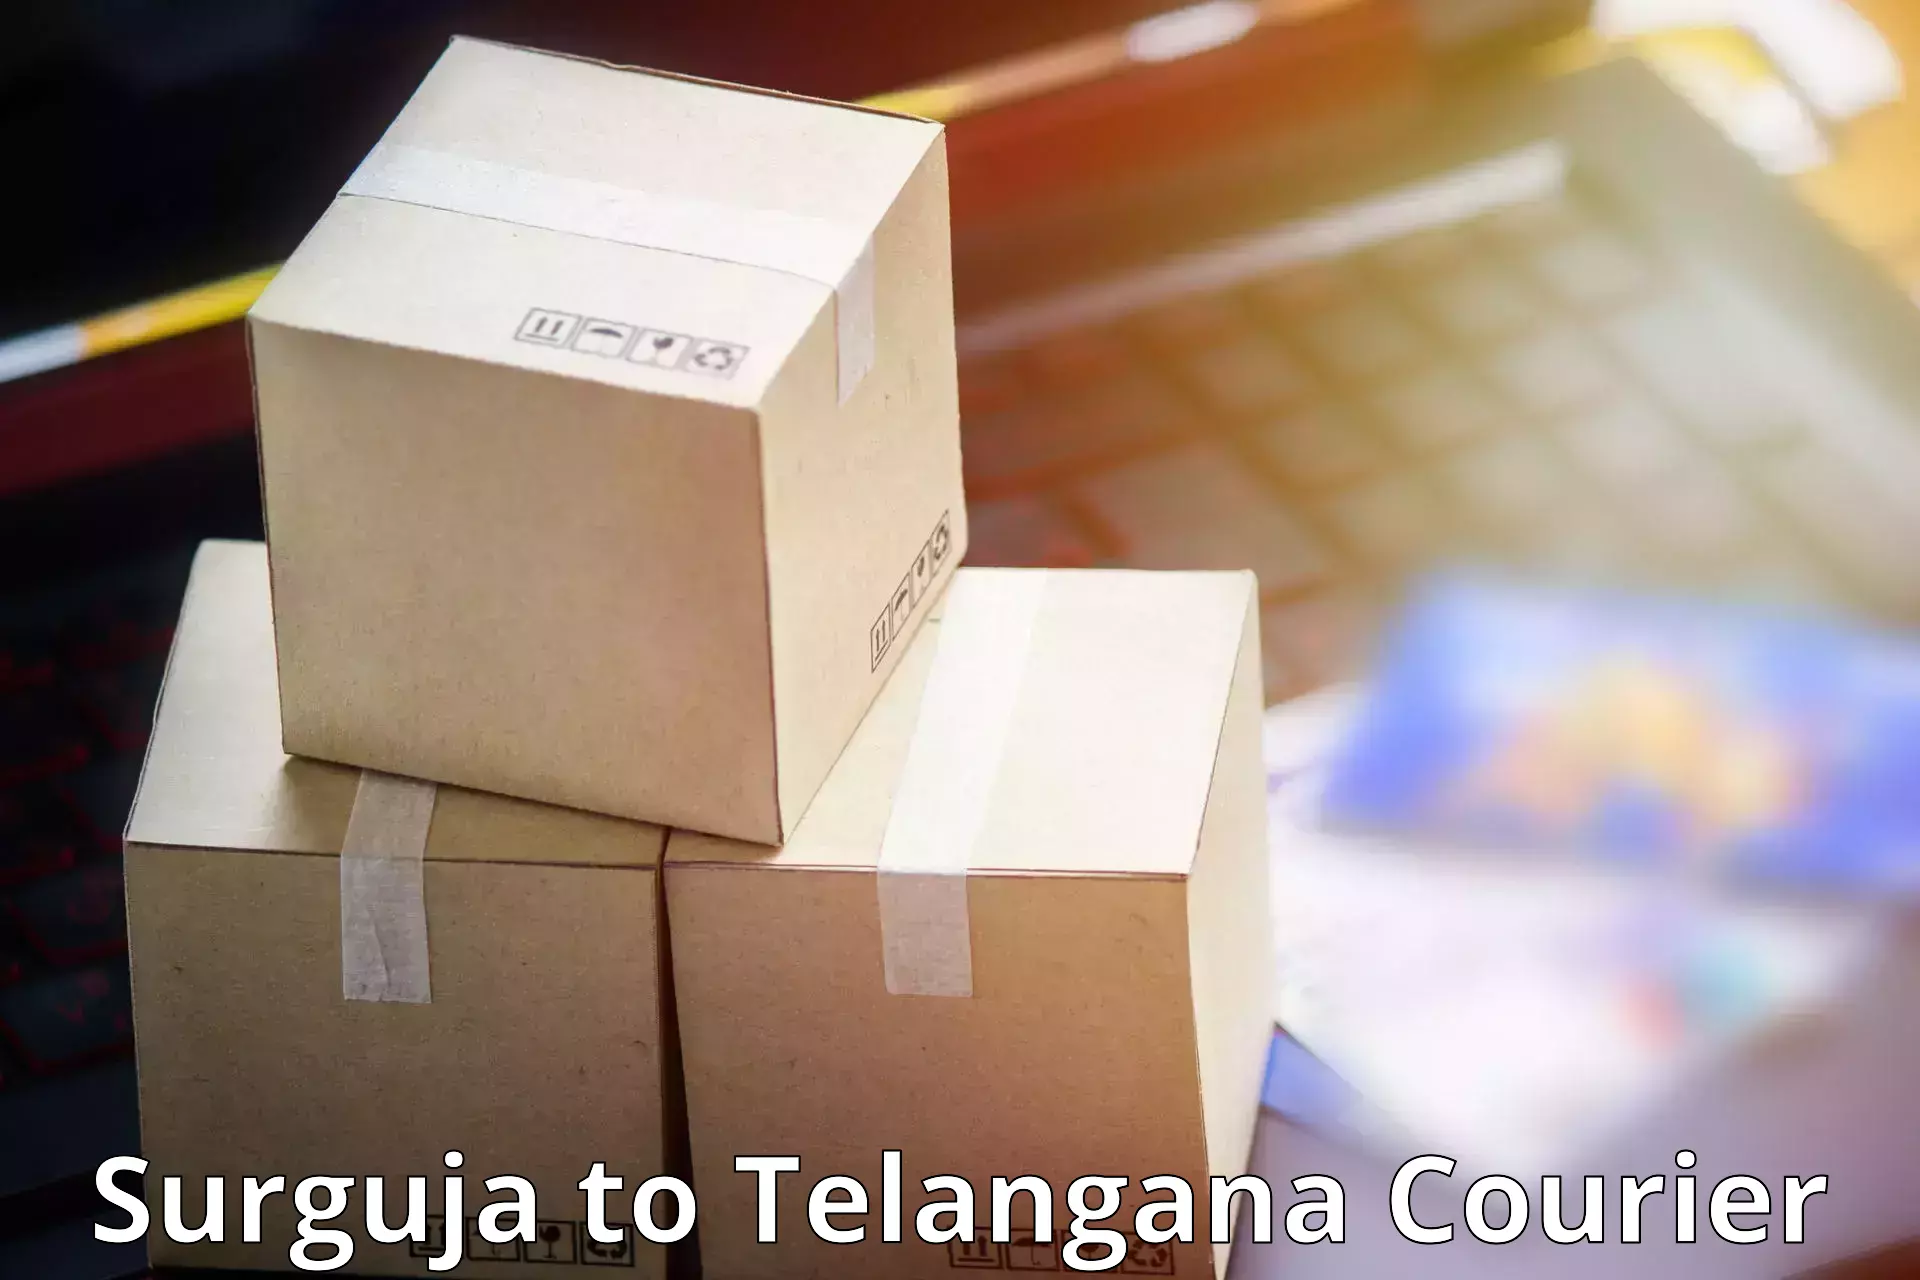 Custom courier packaging Surguja to Haliya